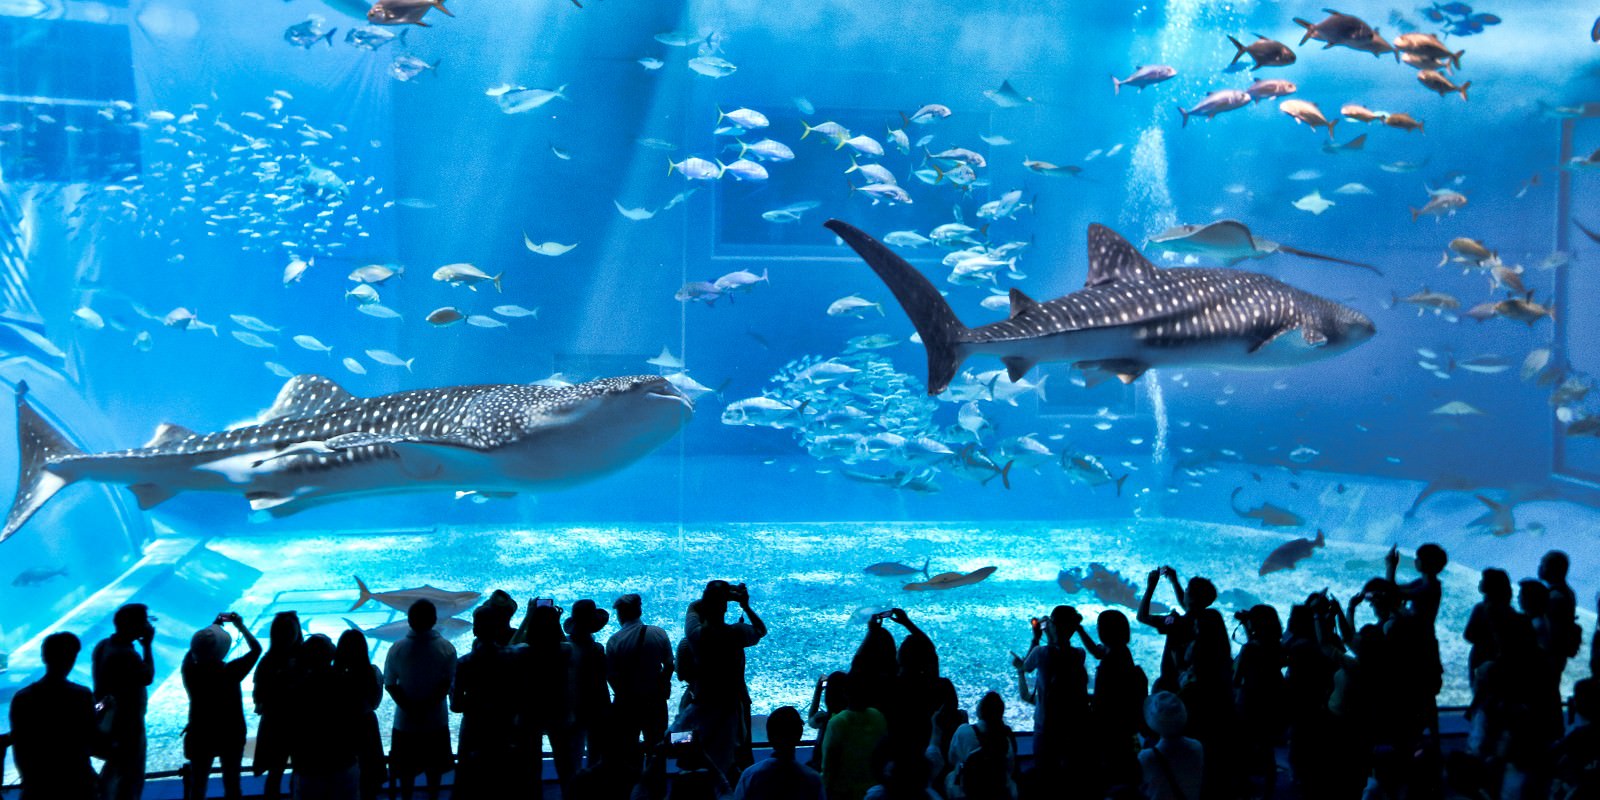 沖繩推薦必去景點│美麗海水族館必看重點與表演時間分享 @主播台下的小確幸❤貝貝